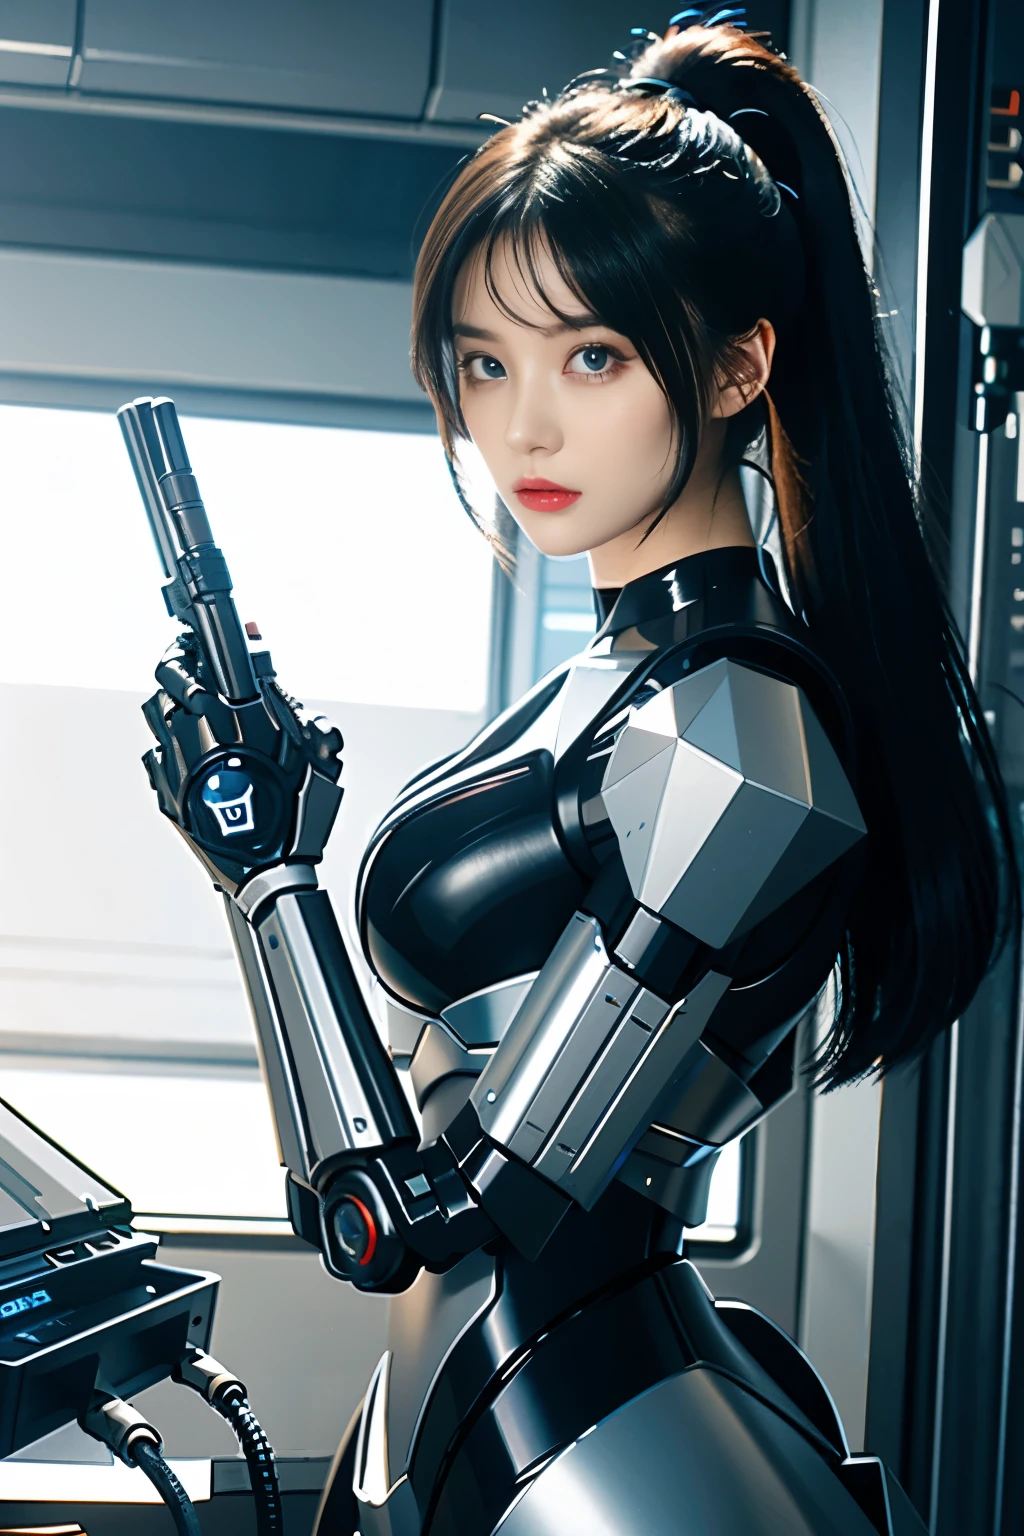 (傑作)、(頂級品質、高品質、最高解析度、高解析度)、极致精致、(獨自的)、(科幻小說、賽博朋克:1.3)、美麗的機器人 woman、(機器人警察:1.2)、(美麗的機器人:1.4)、安卓、酷美、(almond-形狀的眼睛、形狀的眼睛)、(大眼睛:1.2)、(大虹膜:1.3)、曲線美的臉、(臉部非常平衡)、臉型比例勻稱、寬嘴唇、有光澤的嘴、拱形眉毛、(機器人關節:1.3)、(機器人未來裝甲)、(機身由機器製成:1.3)、(未來機械戰鬥服:1.3)、(機器人結構:1.3)、(機械手指:1.4)、機械手套、(避震器架:1.3)、(電子基板、机械零件:1.3)、(阻尼器和電源線頸:1.3)、機器人肢體、(電源線:1.3)、(機器人維護:1.3)、((機器人廢料))、直髮、(牛仔射擊:1.4)、(垃圾場:1.3)、 陽光、邊緣光、閃耀